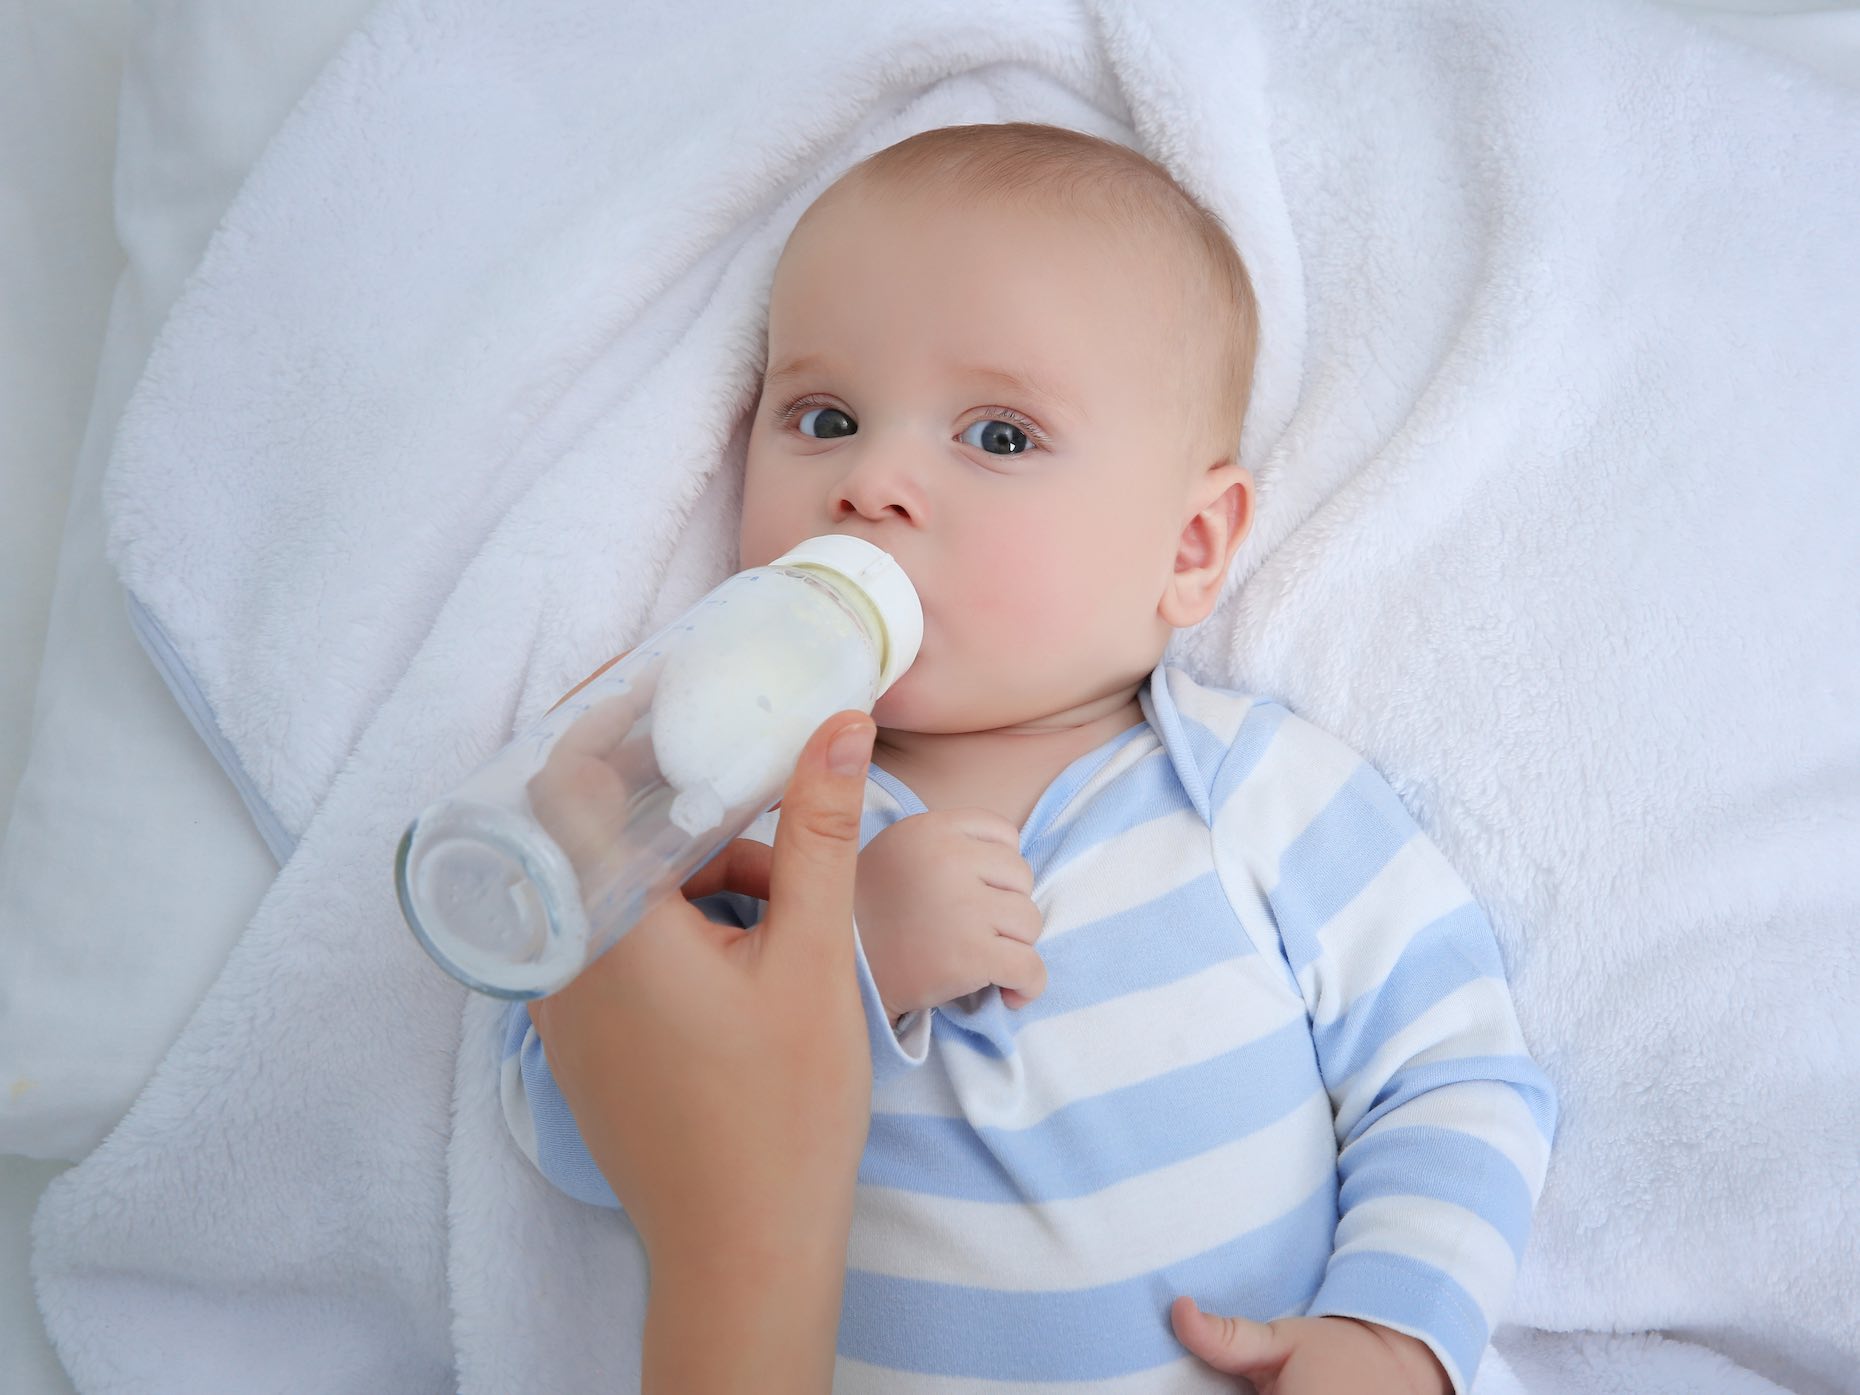 Come conservare il latte in formula - Amico Pediatra